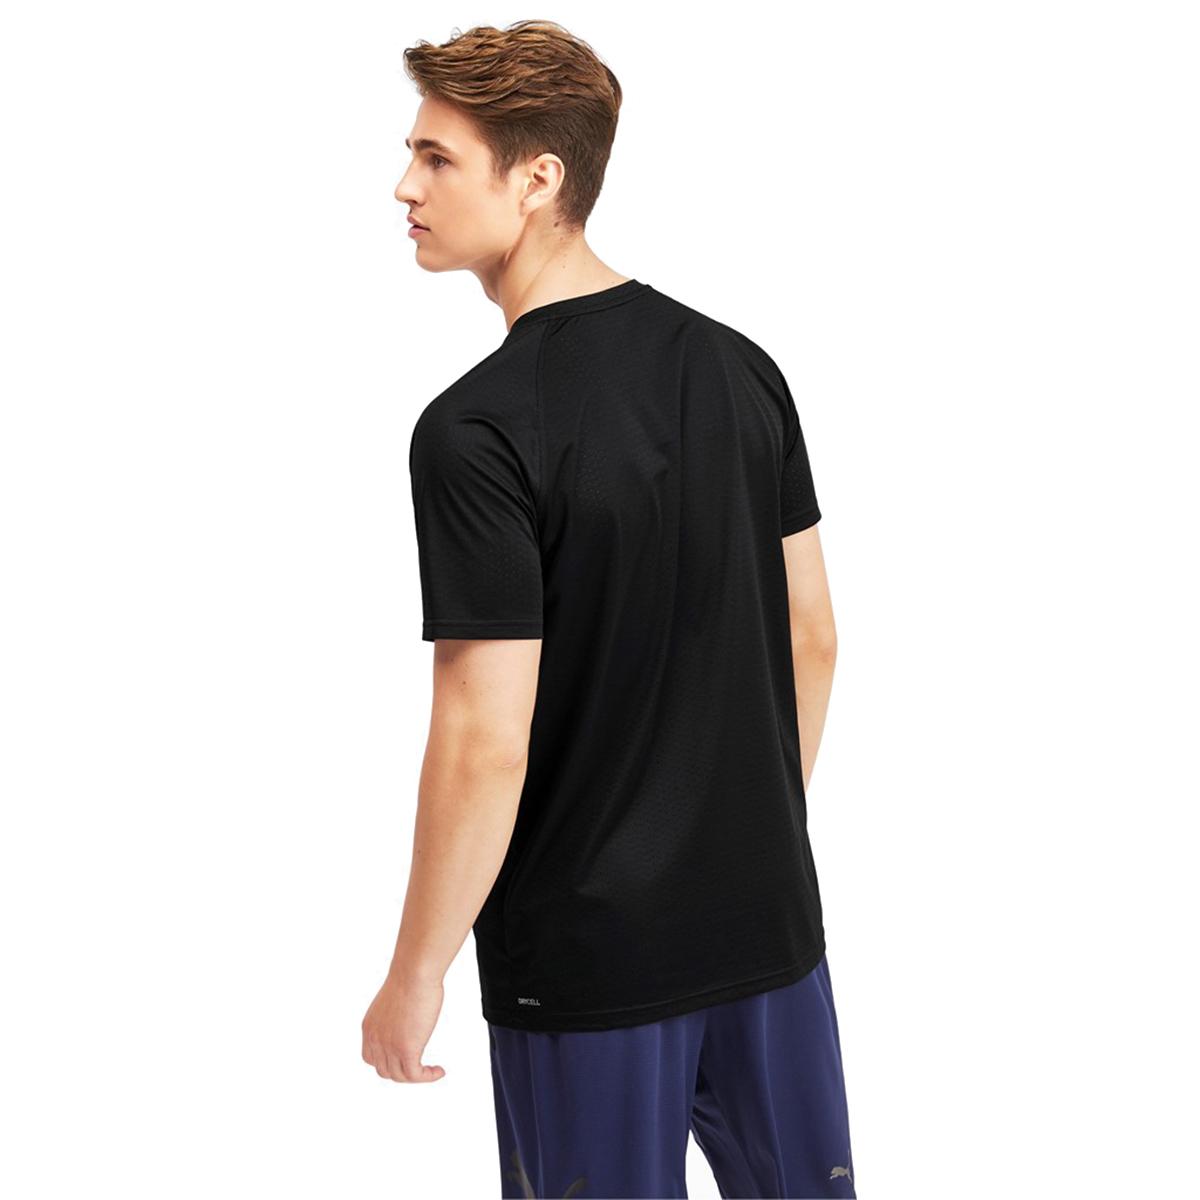 PUMA SS Tech Tee Herren T-shirt Sportswear 518389 02 schwarz